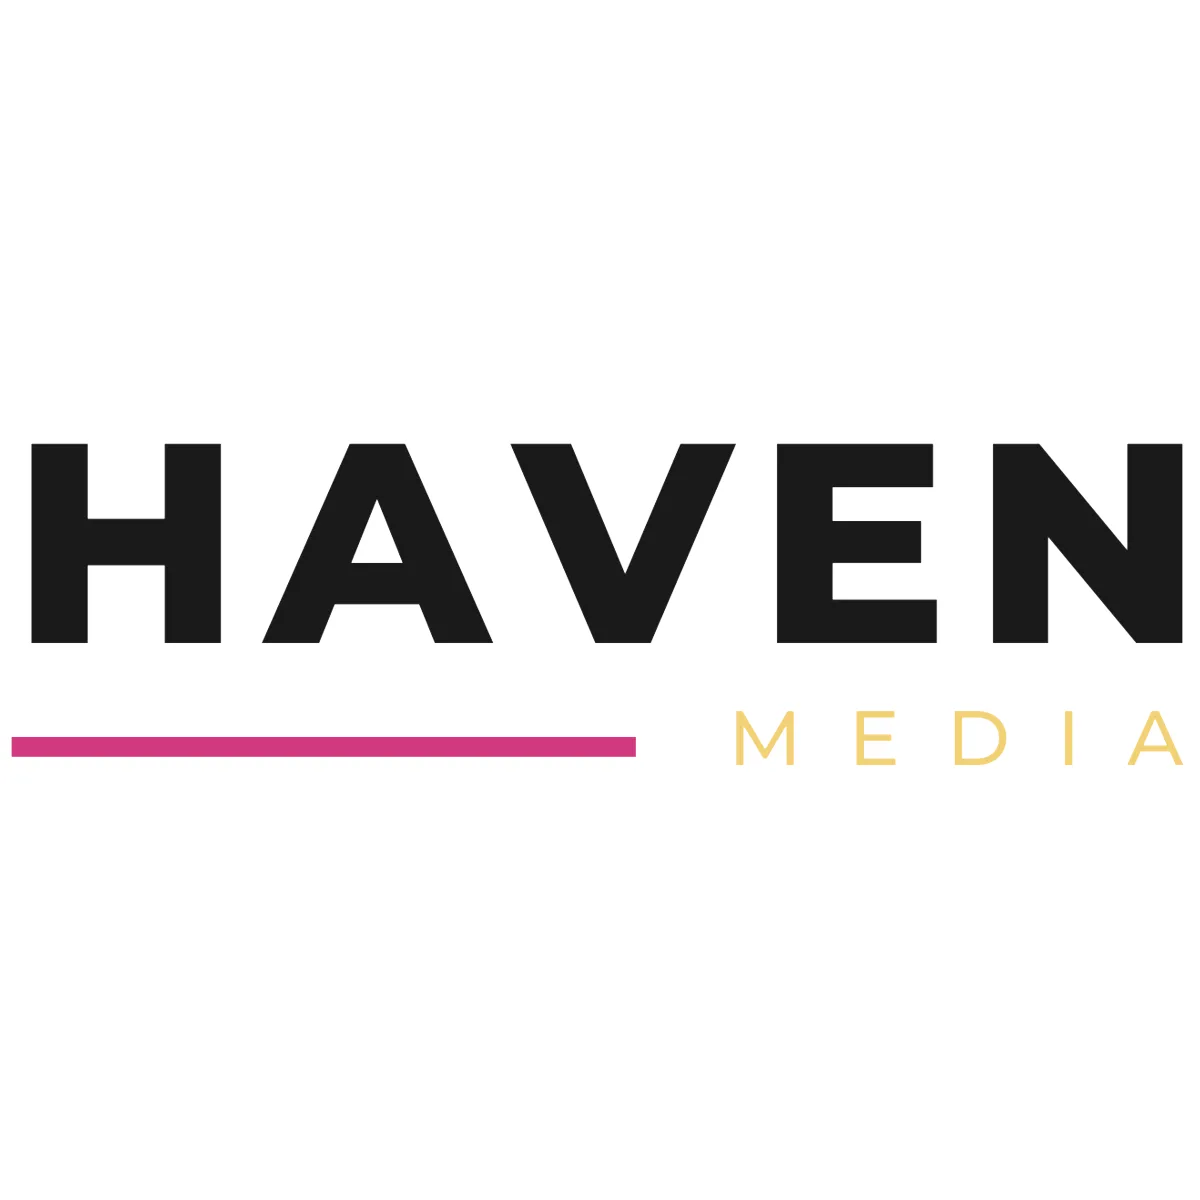 Heather Havenwood - Haven Media